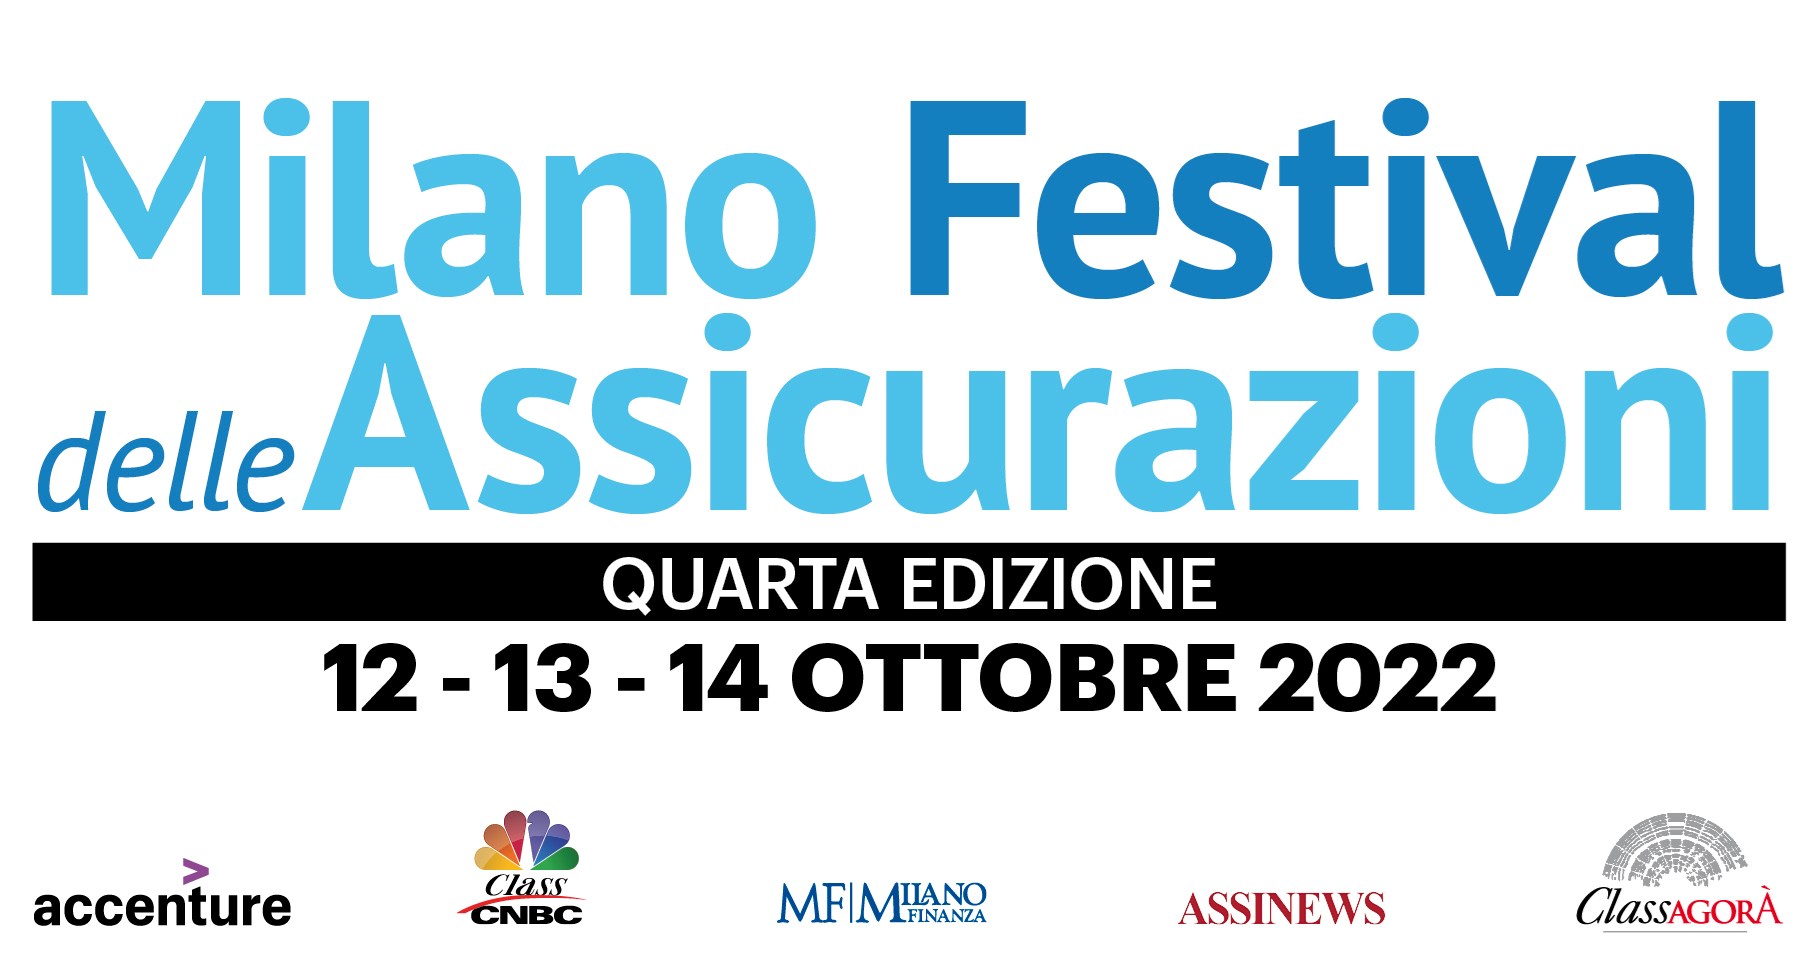 Milano Festival delle Assicurazioni - IV Edizione 2022